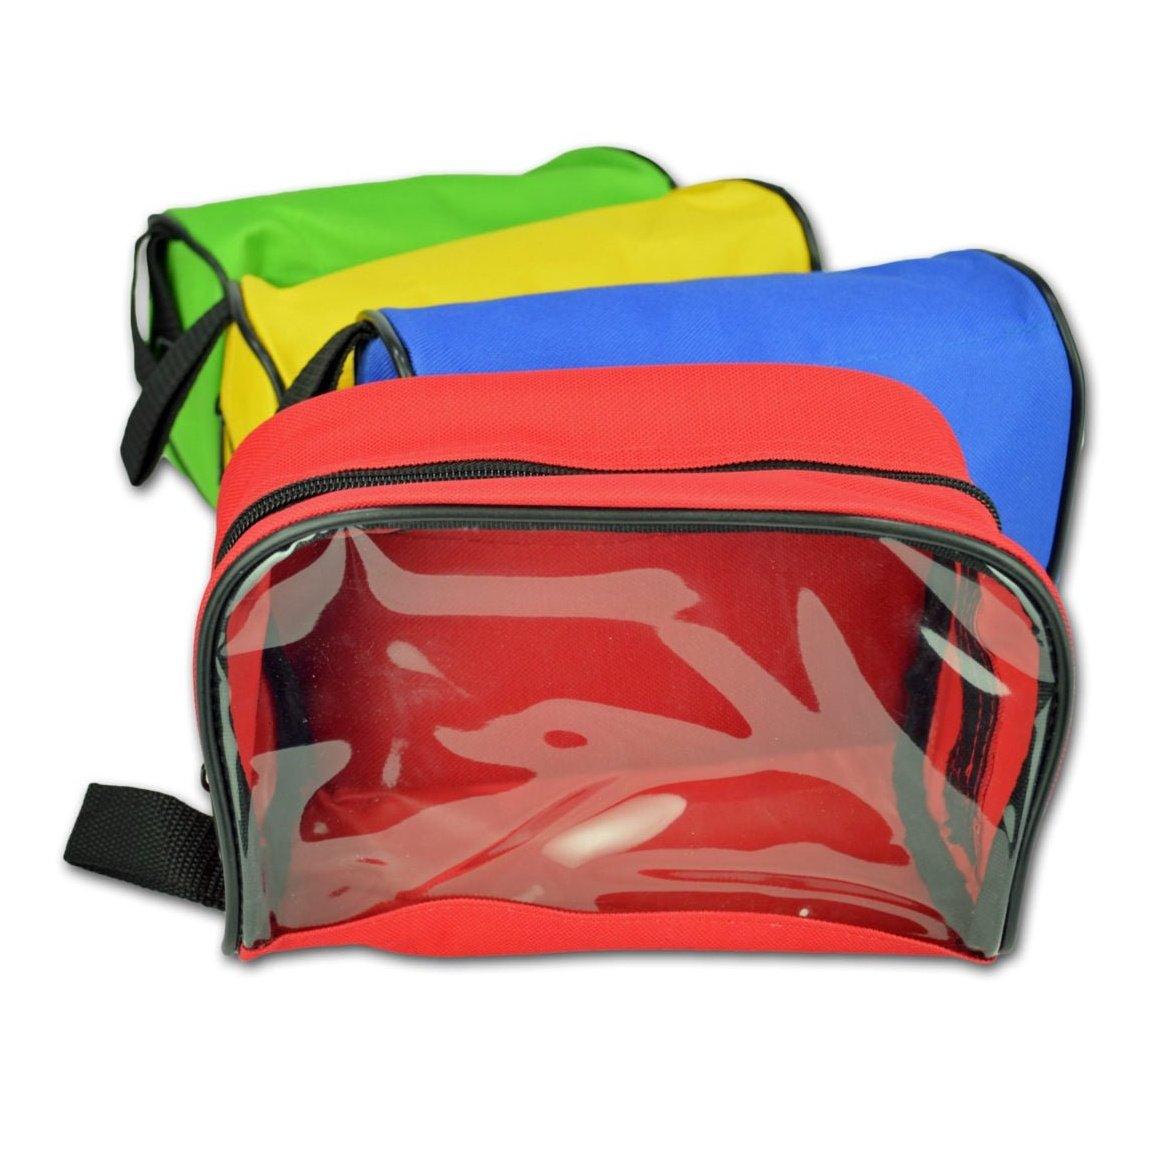 Modular ALS Bag - Vendor